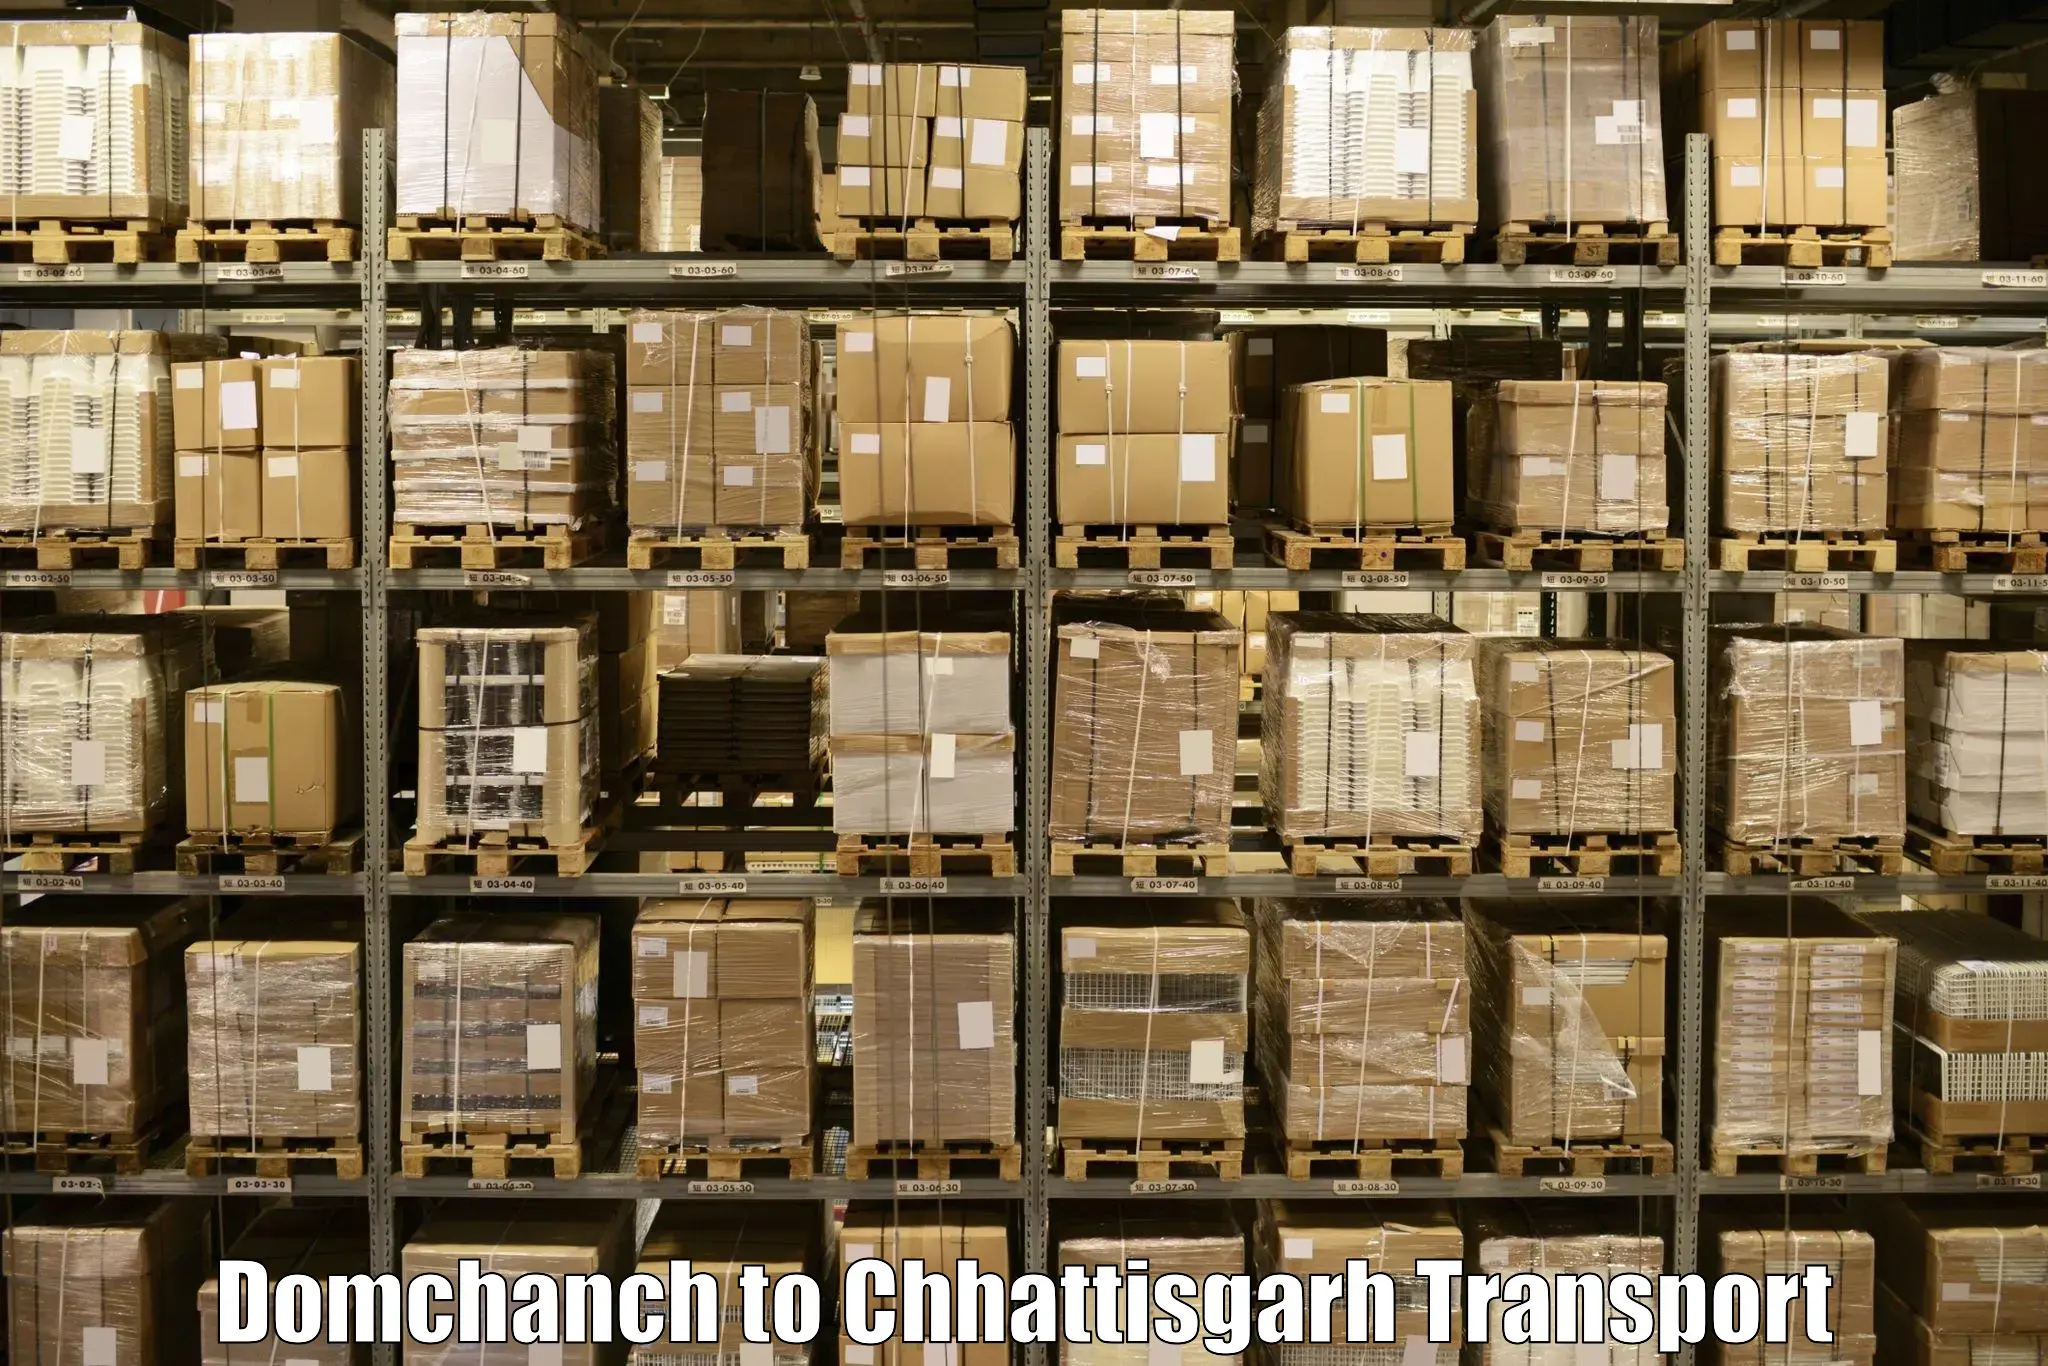 Nearest transport service Domchanch to Mandhar